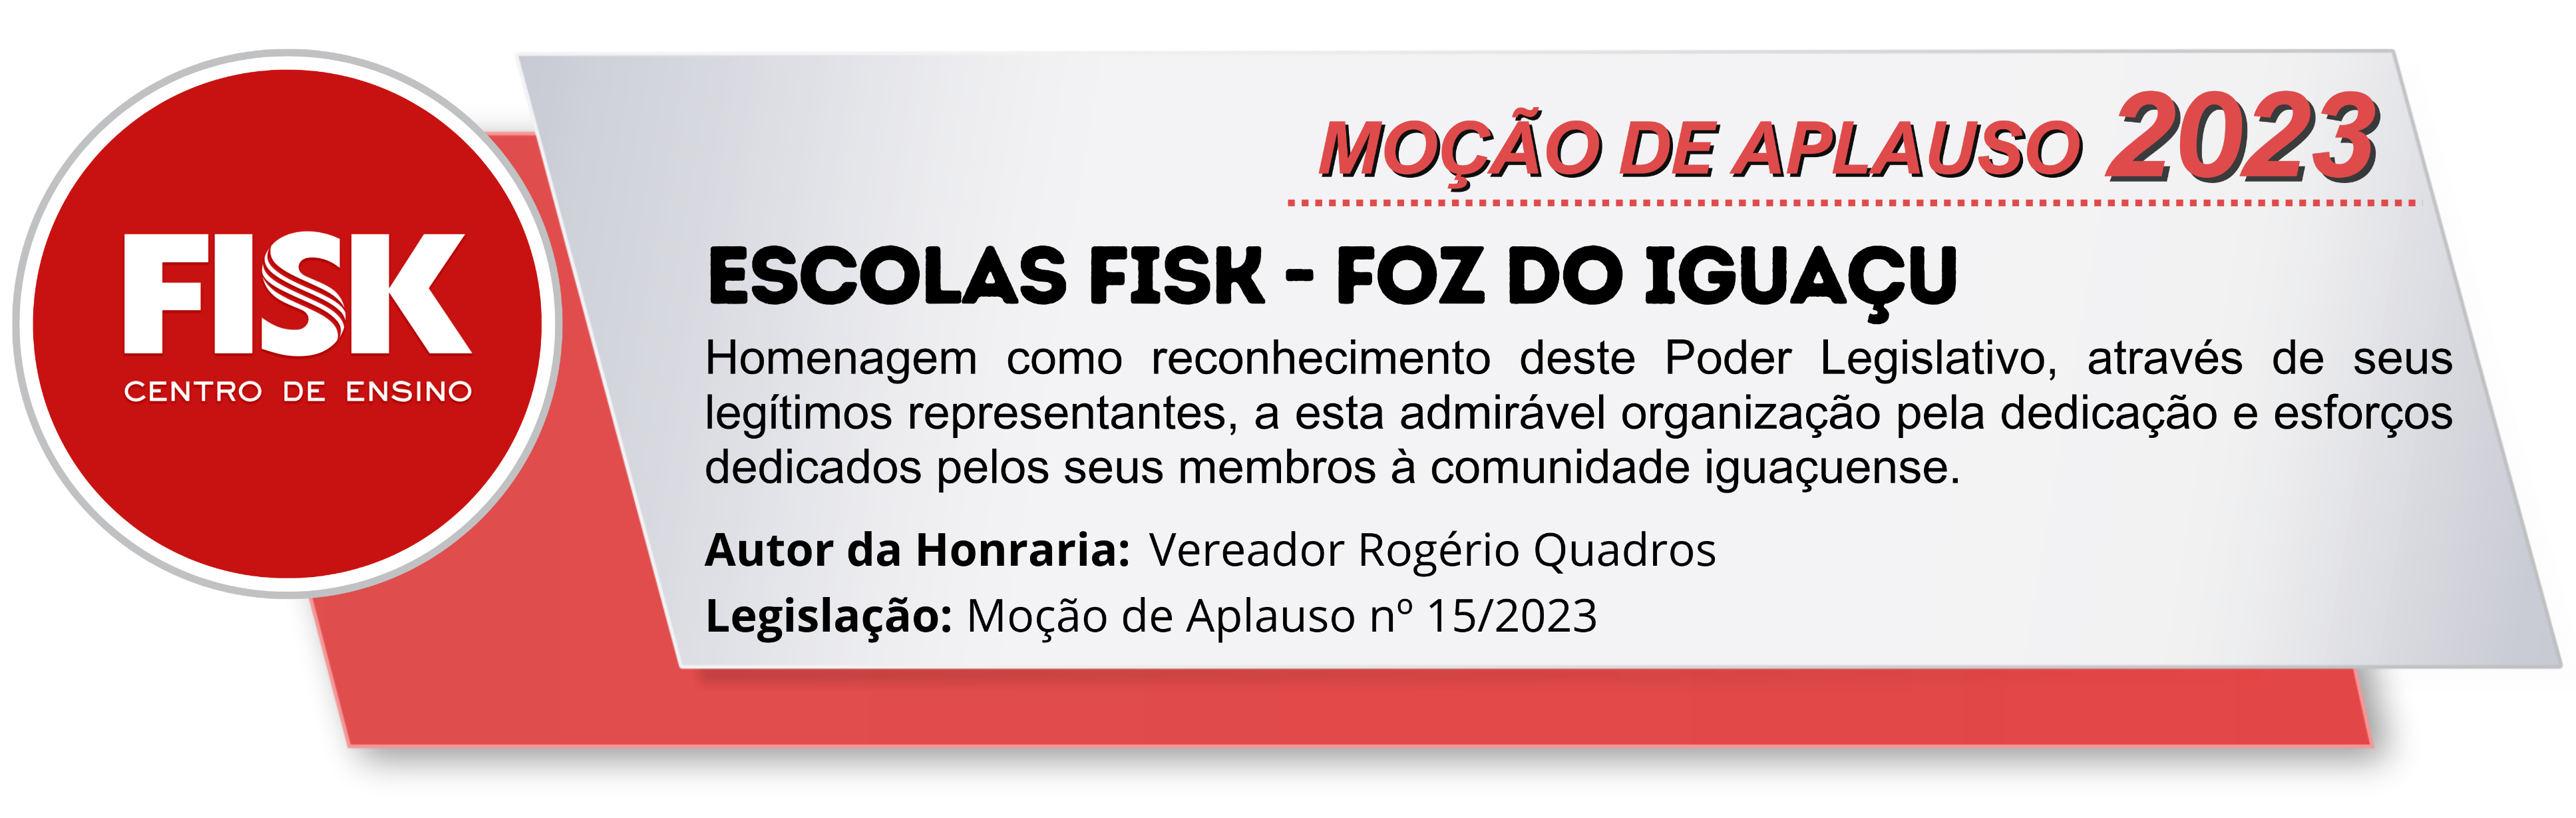 ESCOLAS FISK - FOZ DO IGUAÇU